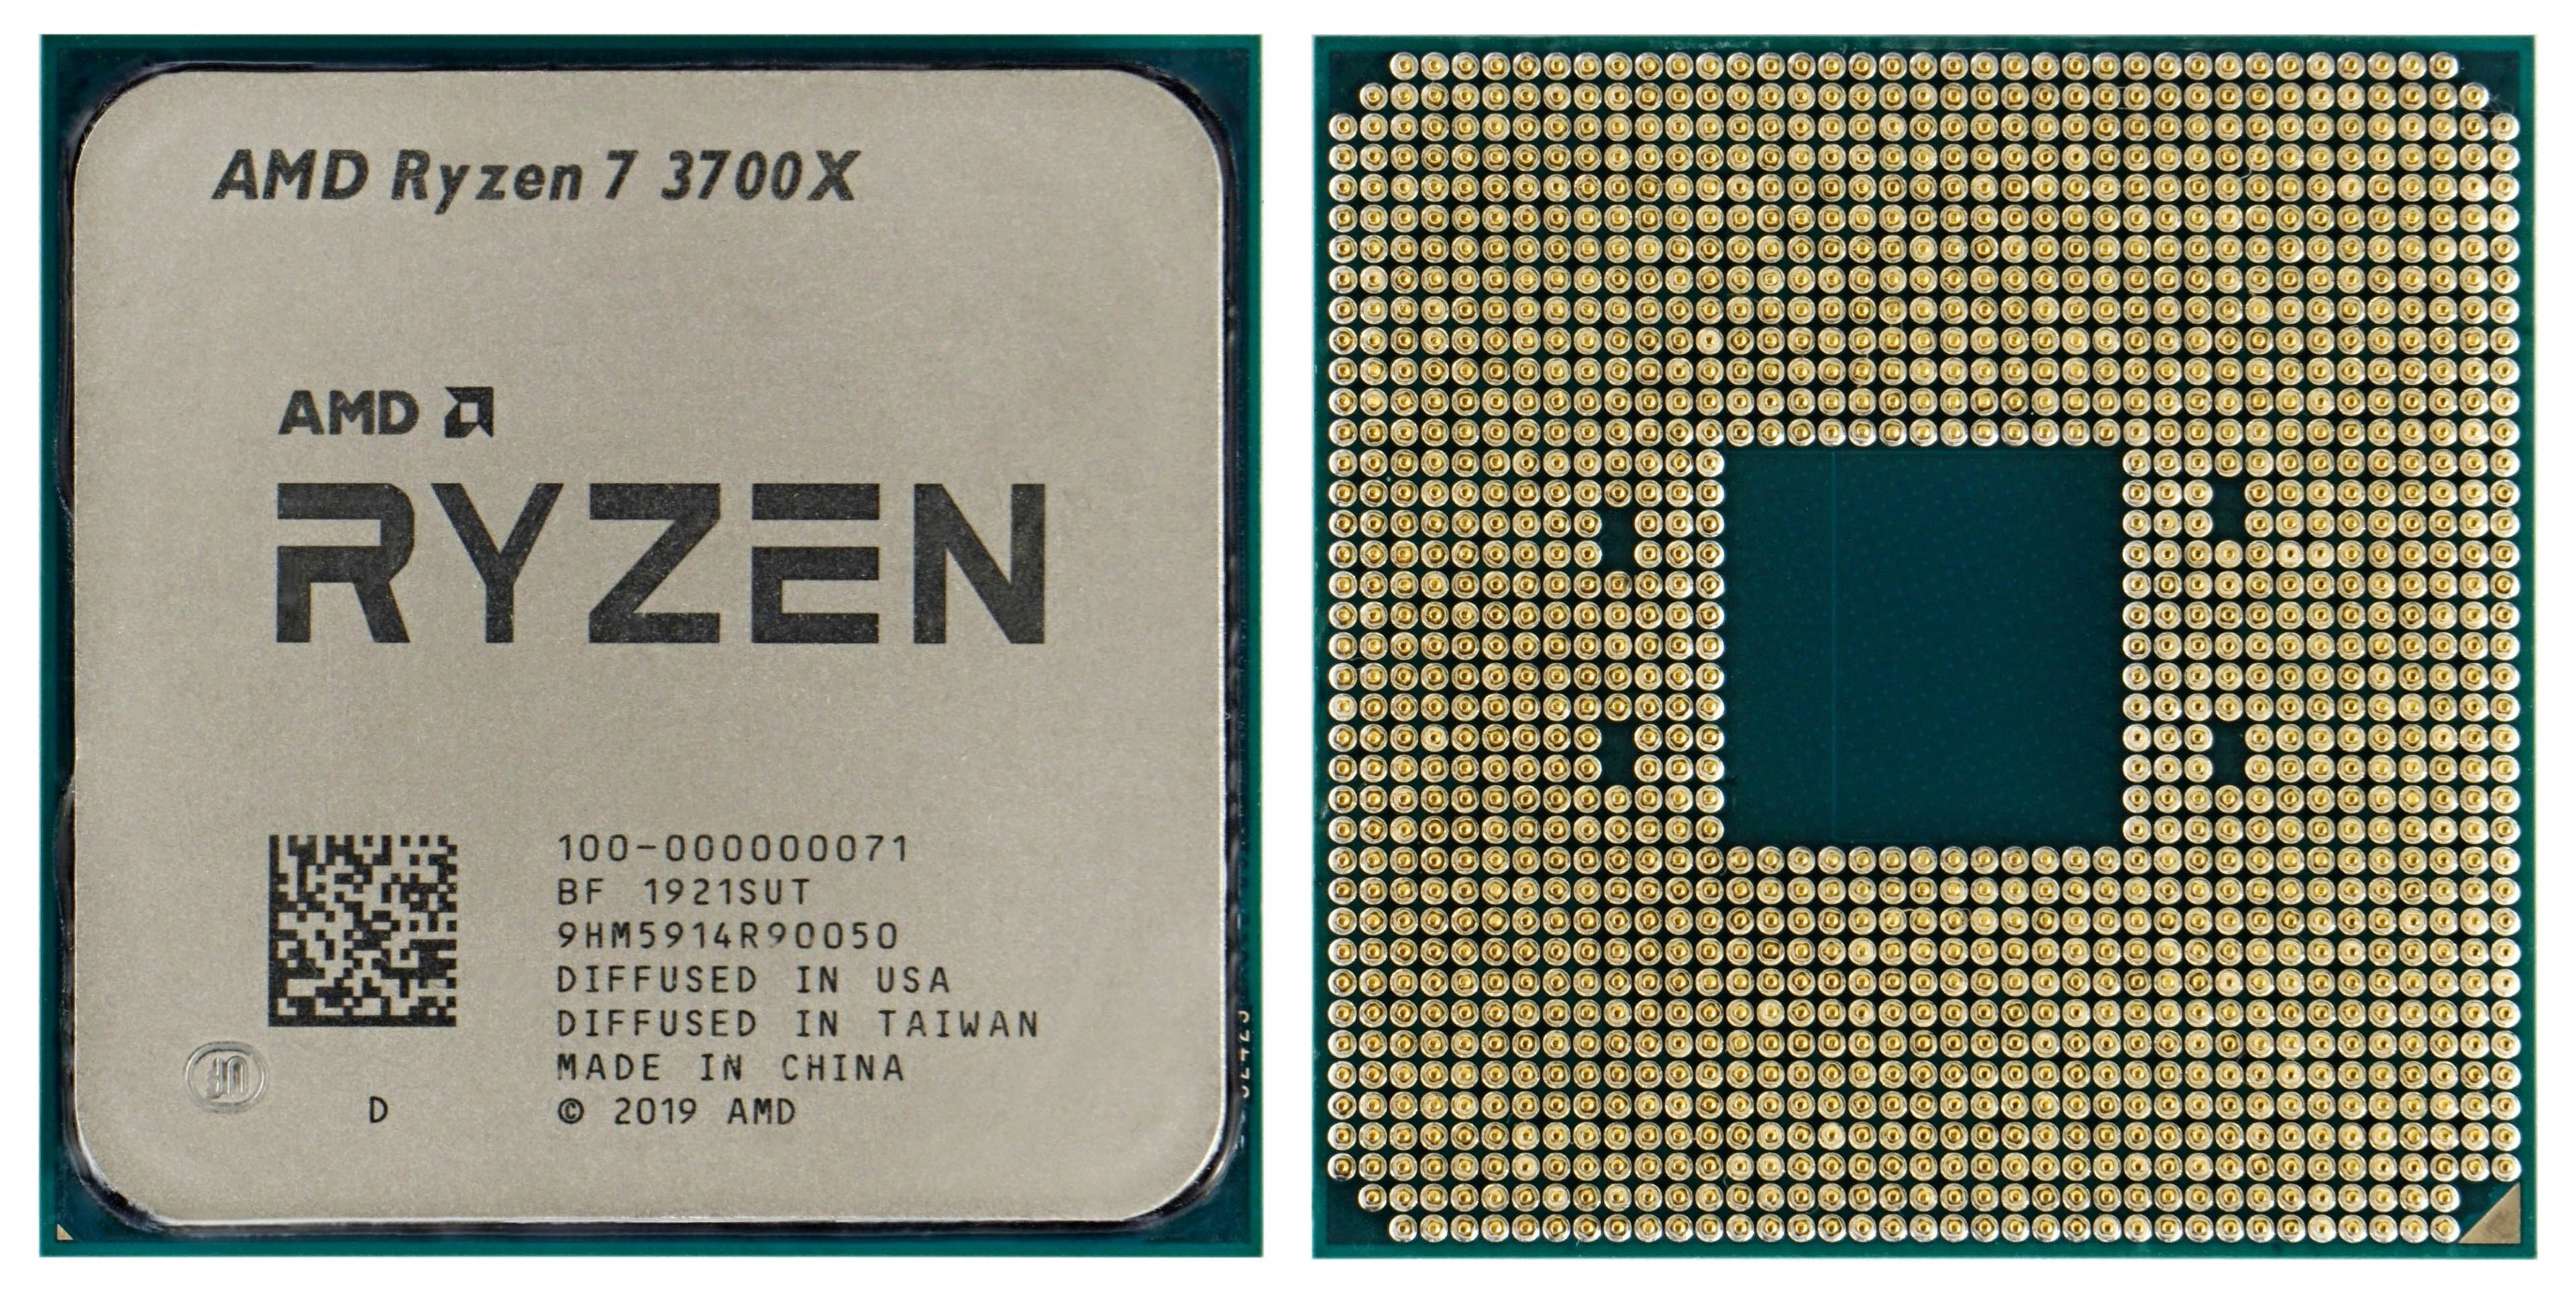 Review of AMD Ryzen 7 3700X processor. Zen 2 still rocks - HWCooling.net